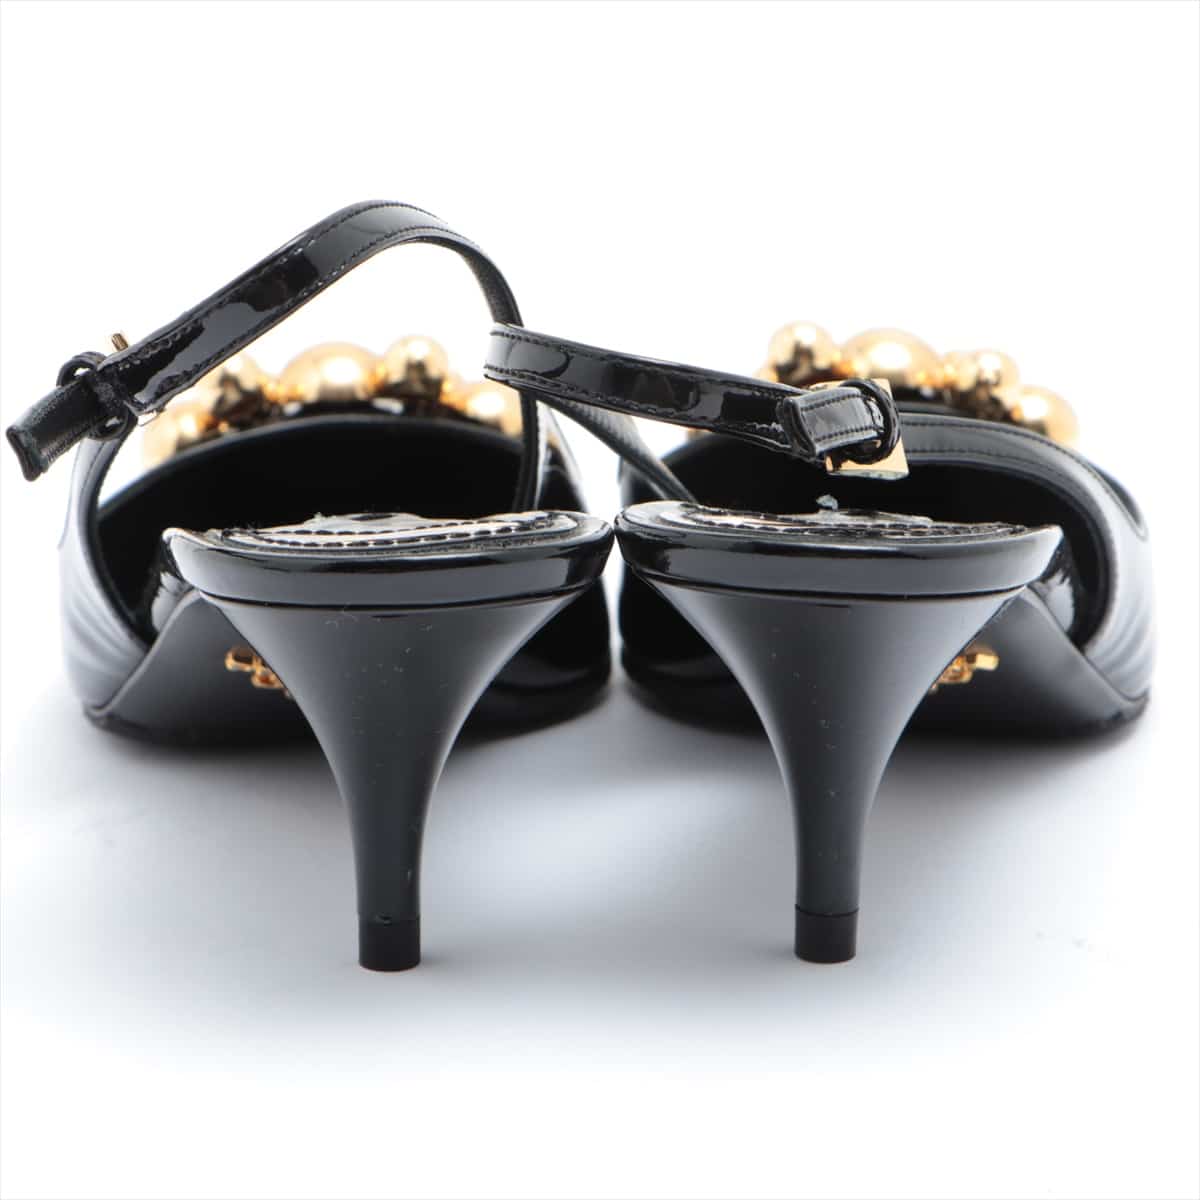 Prada Patent leather Pumps 37.5 Ladies' Black half rubber sole